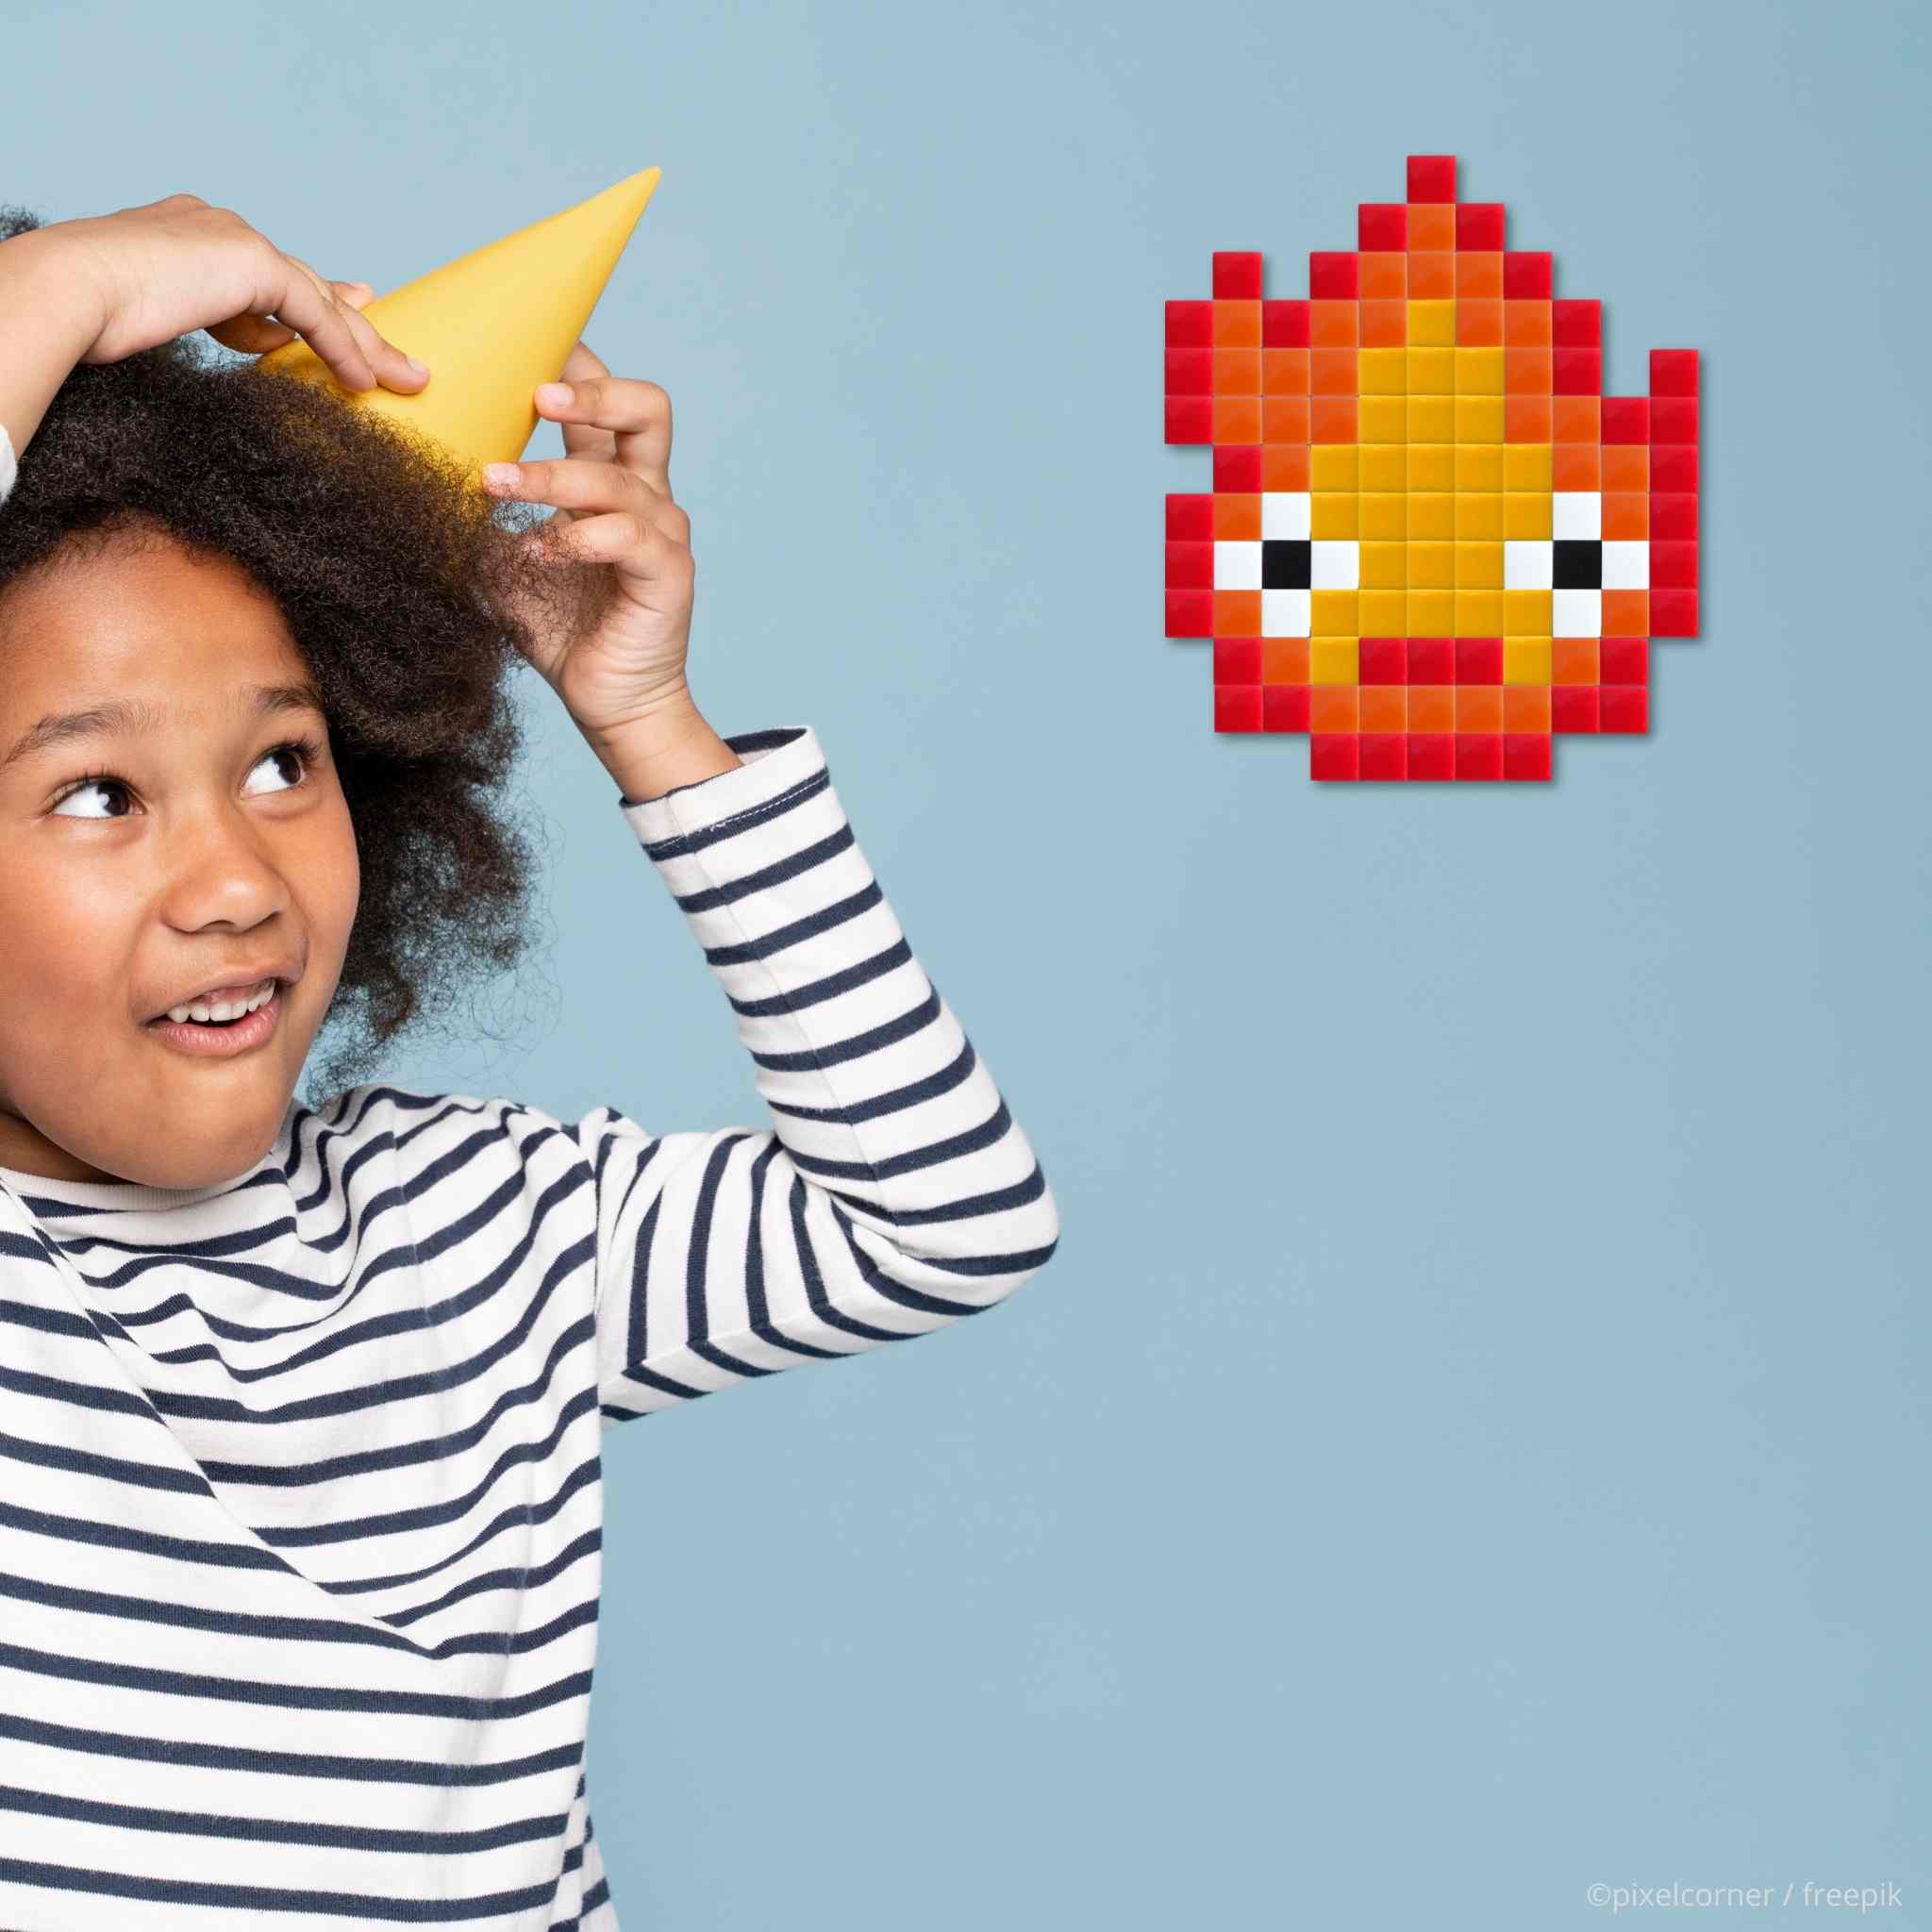 Pixel Art Kit "Sparky" par Pixel Corner - Kits de loisirs créatifs